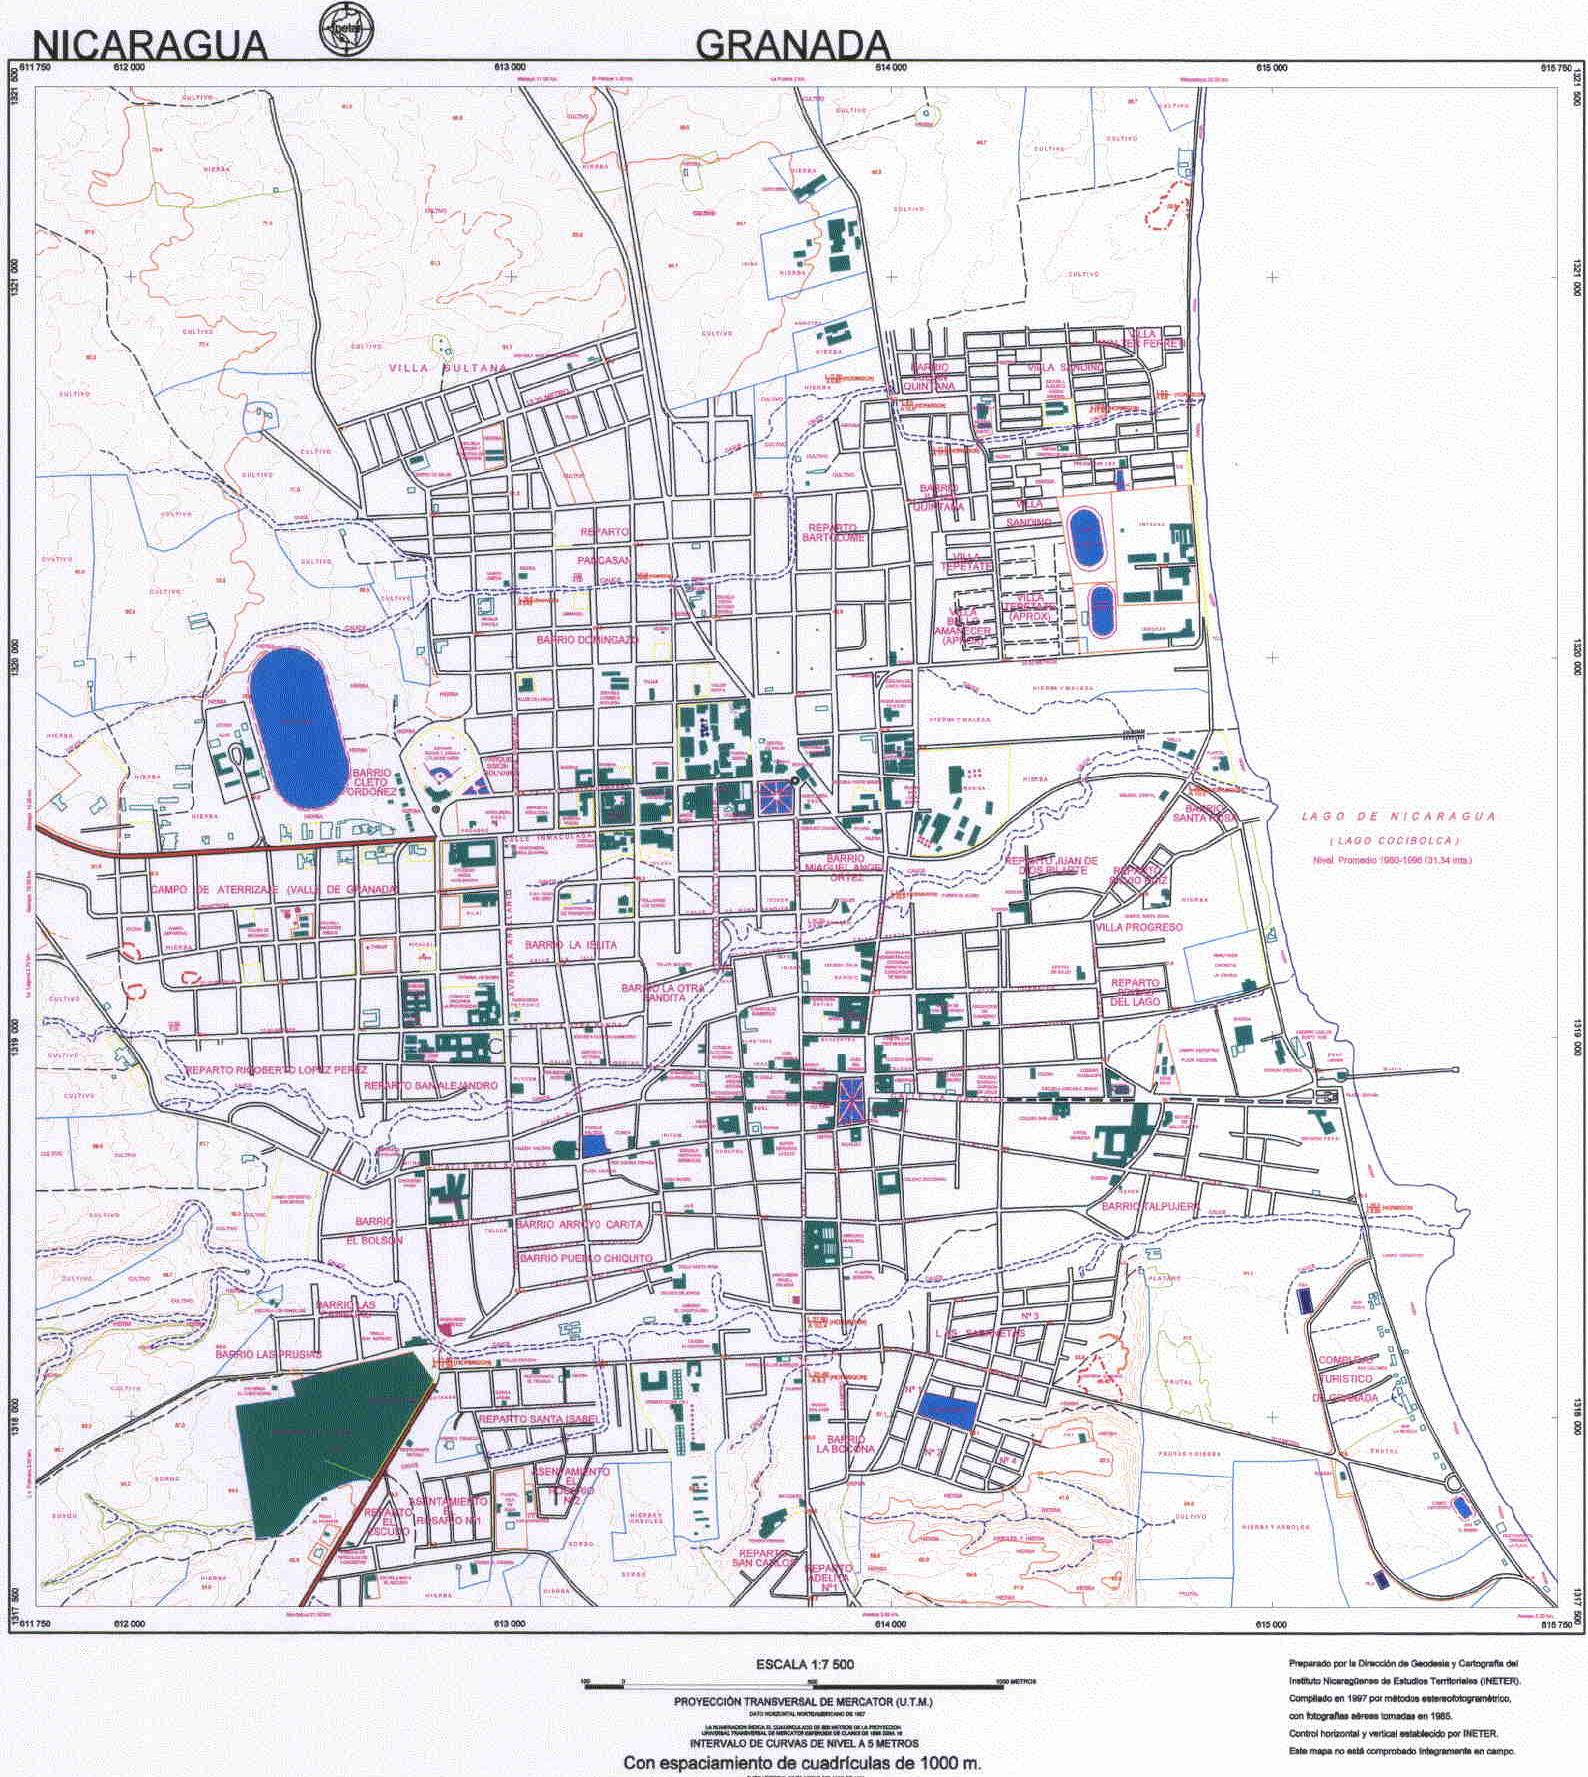 Granada City Detailed Map, Nicaragua